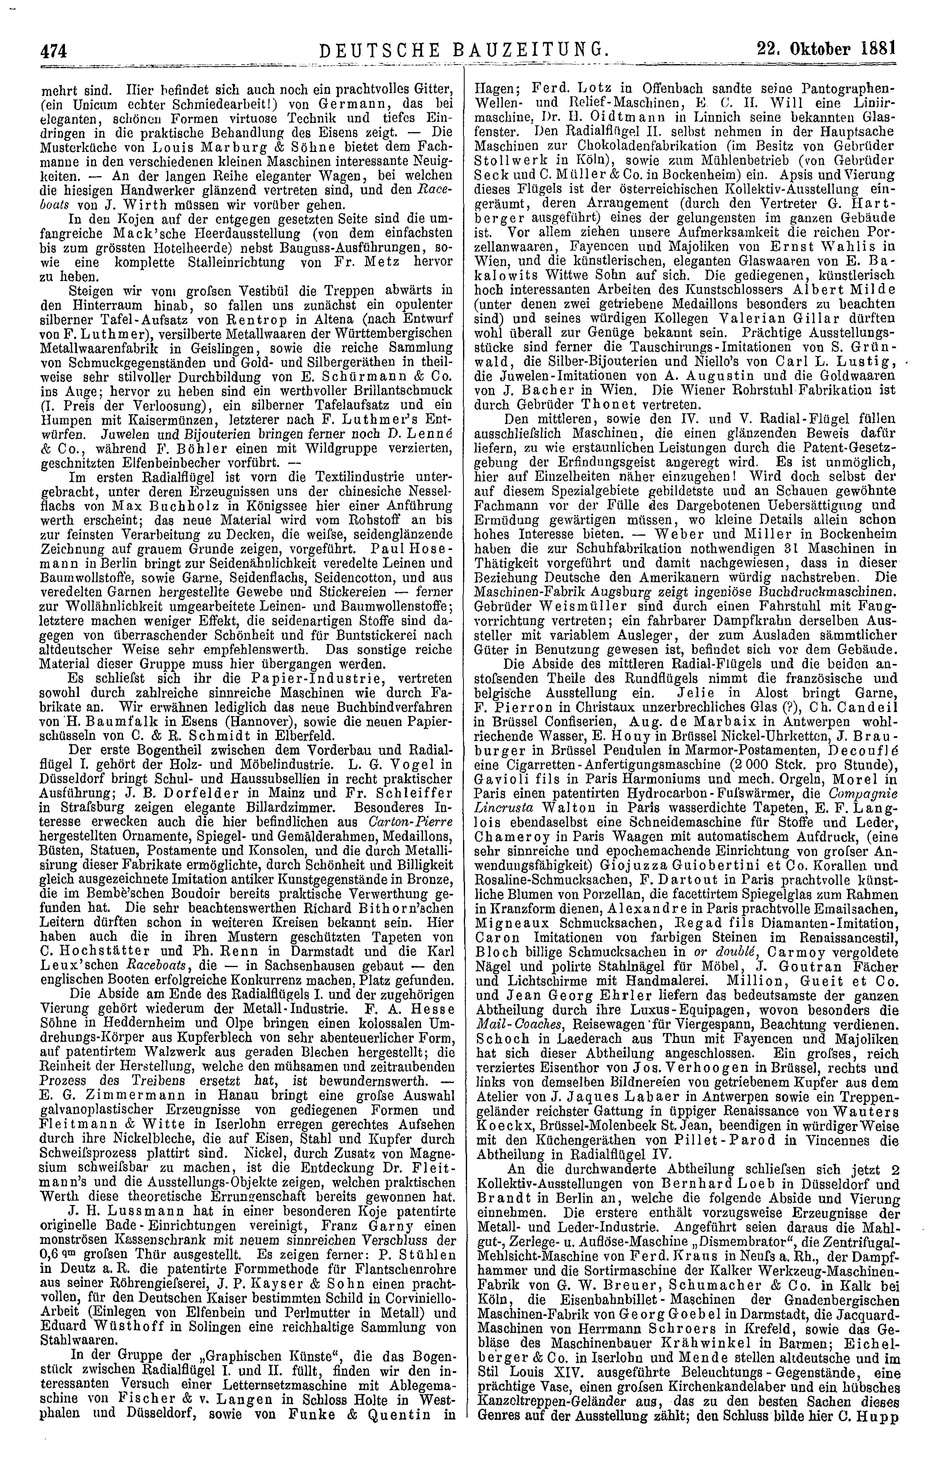 Deutsche Bauzeitung No. 85, Seite 474